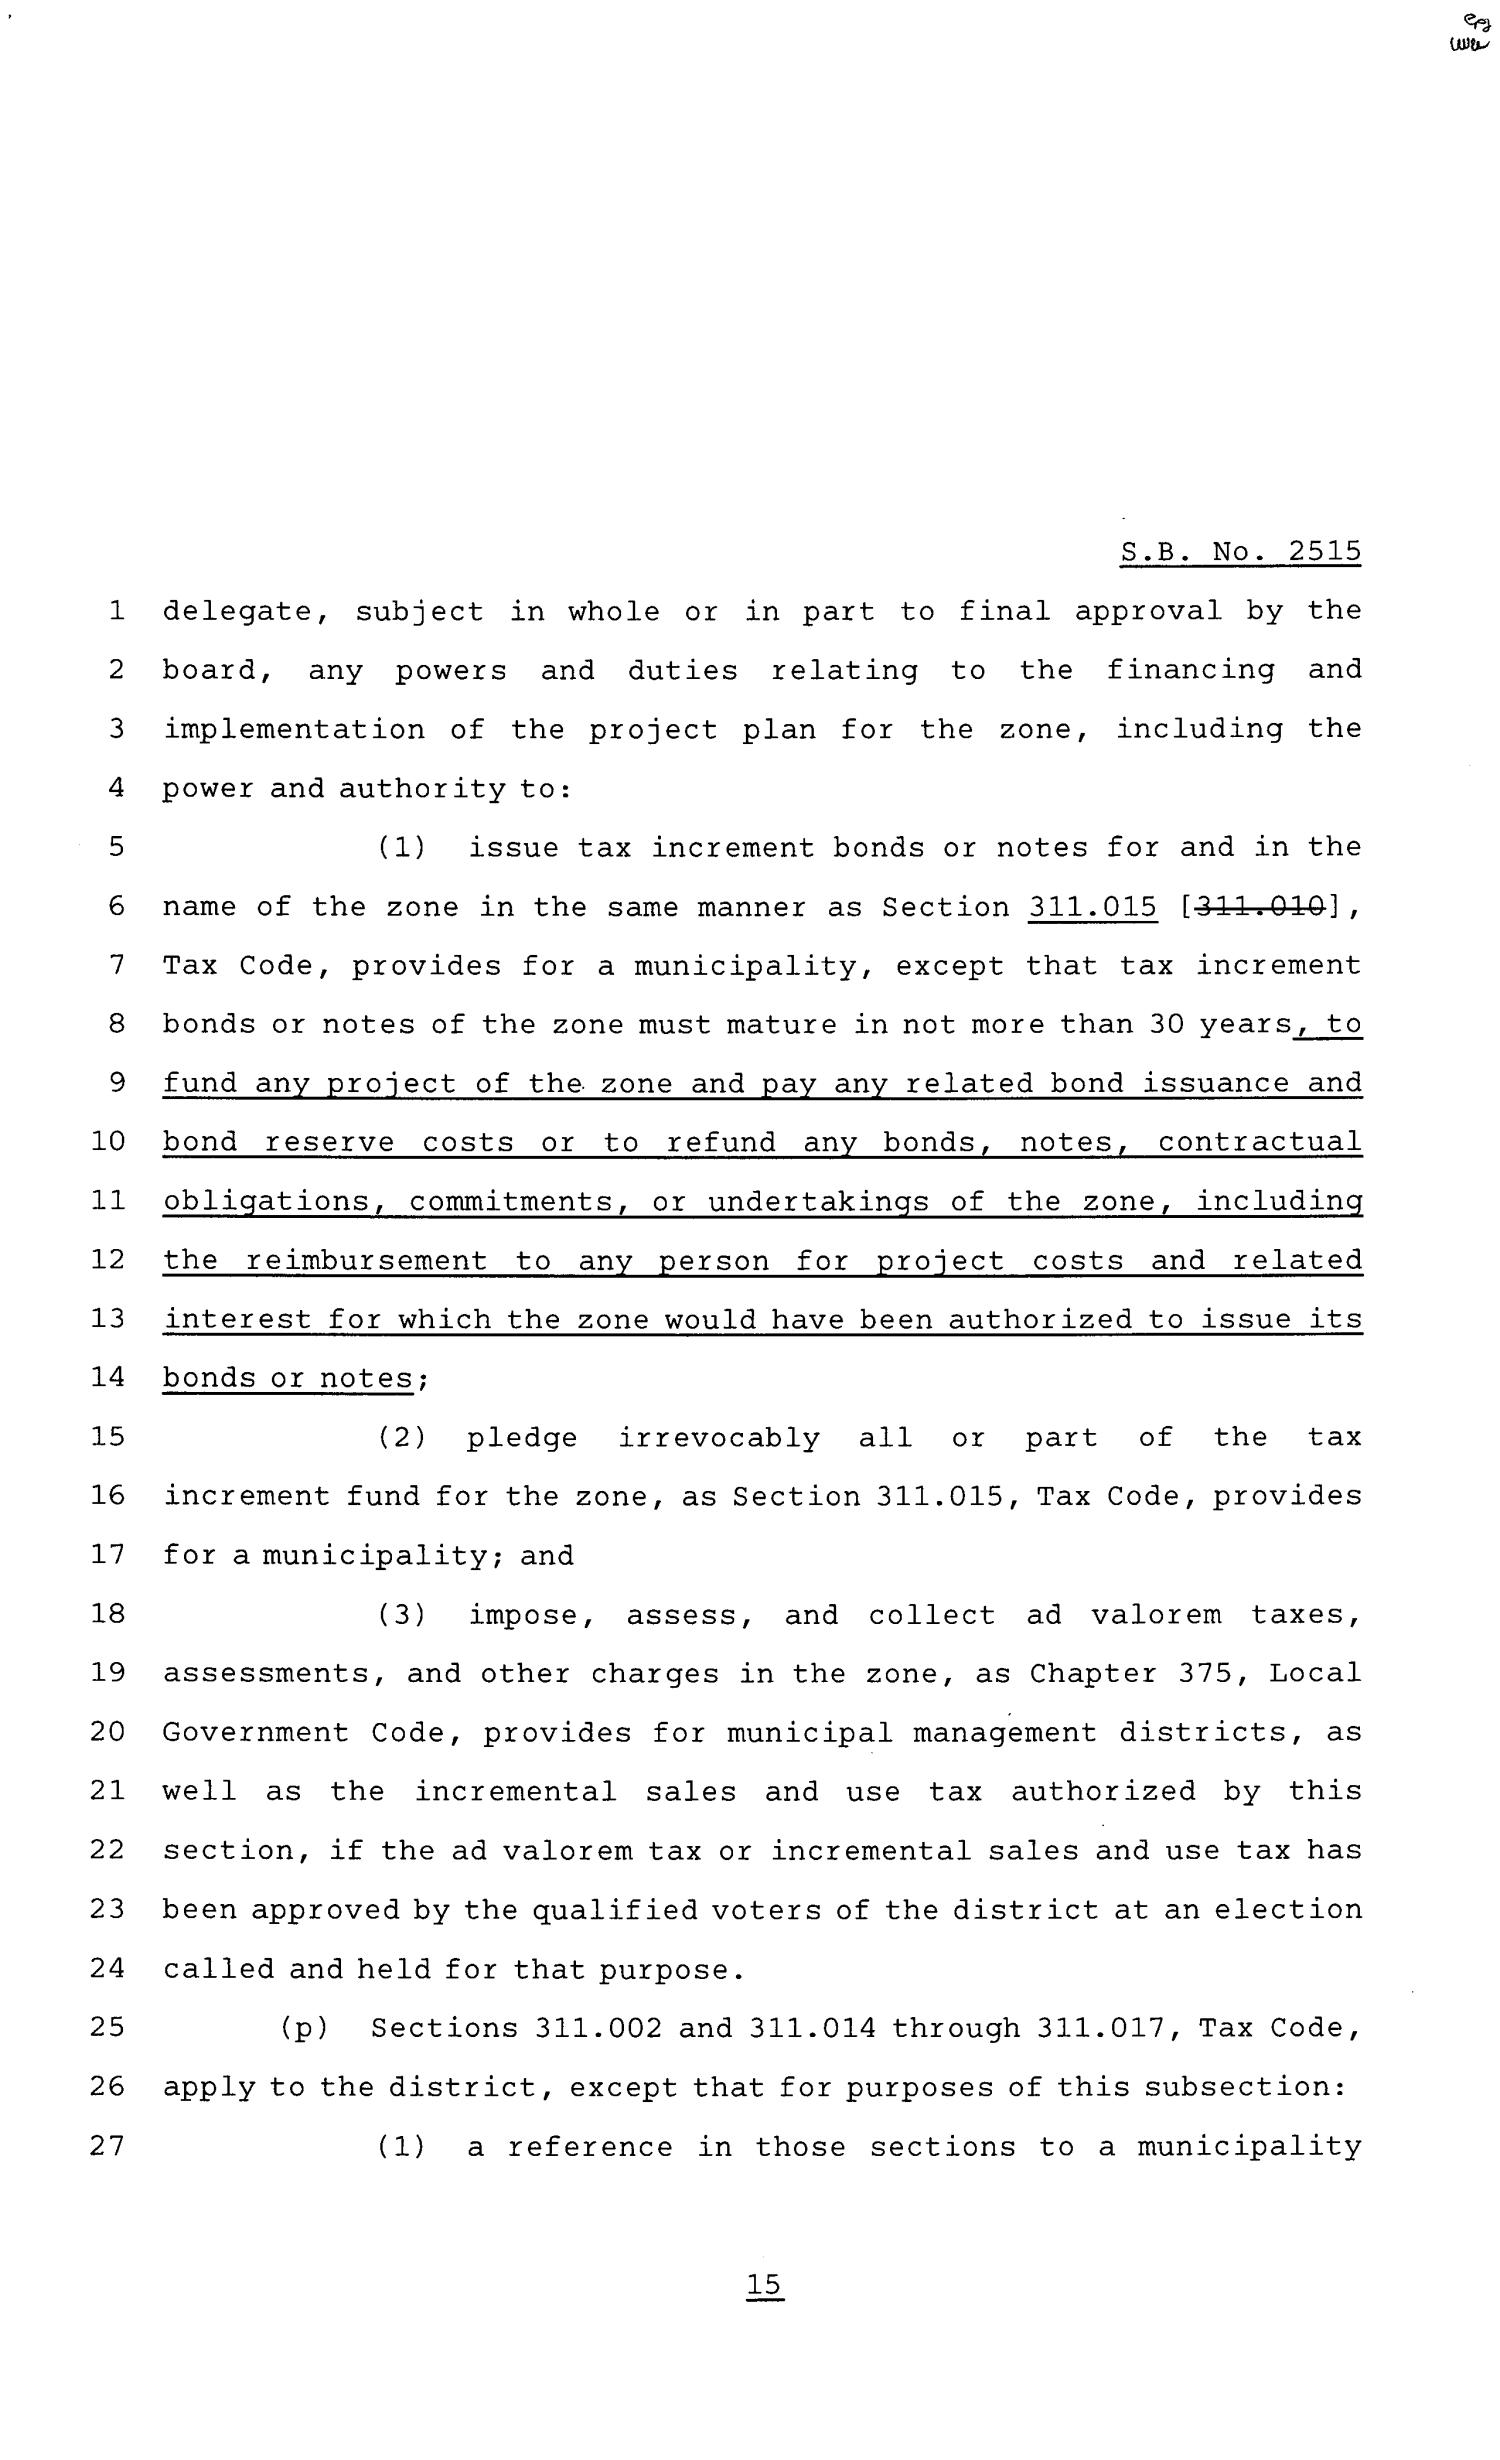 81st Texas Legislature, Senate Bill 2515, Chapter 1397
                                                
                                                    [Sequence #]: 15 of 23
                                                